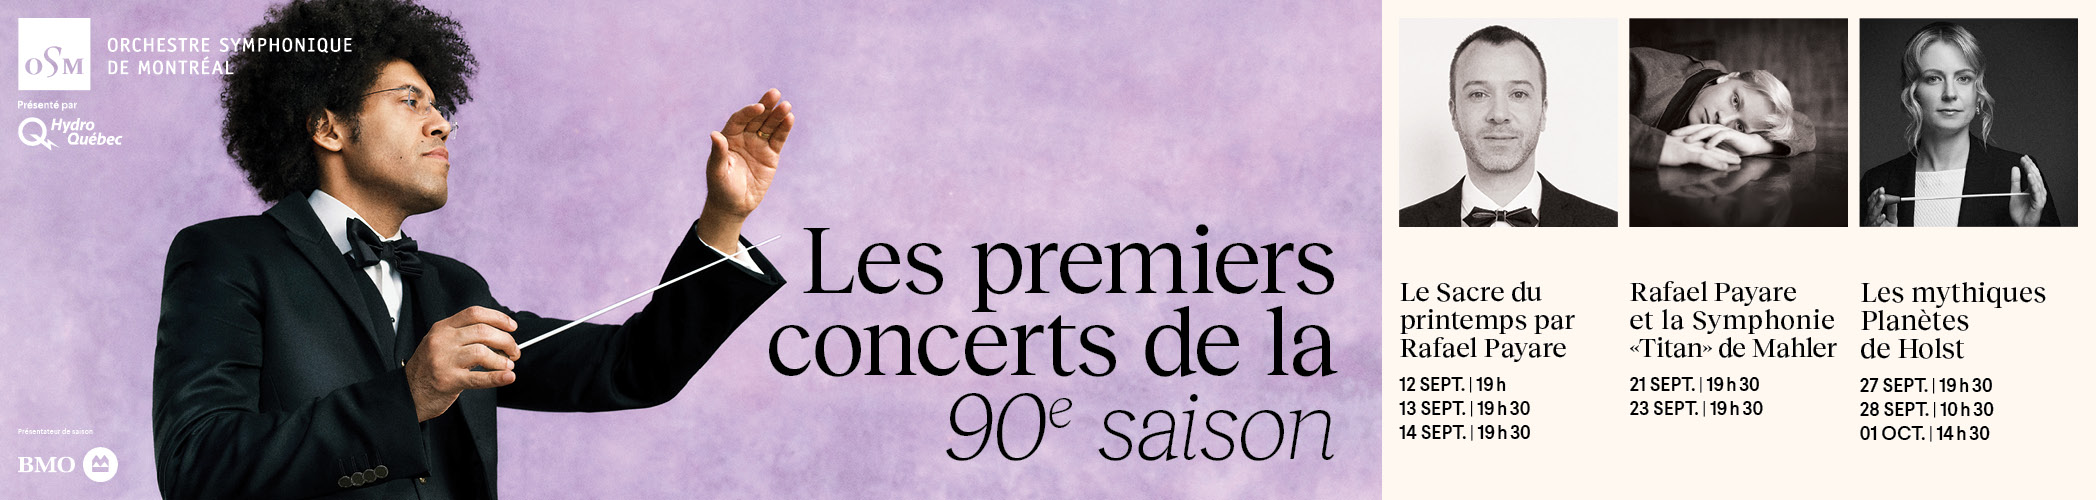 OSM - Les premiers concerts de la 90ème saison